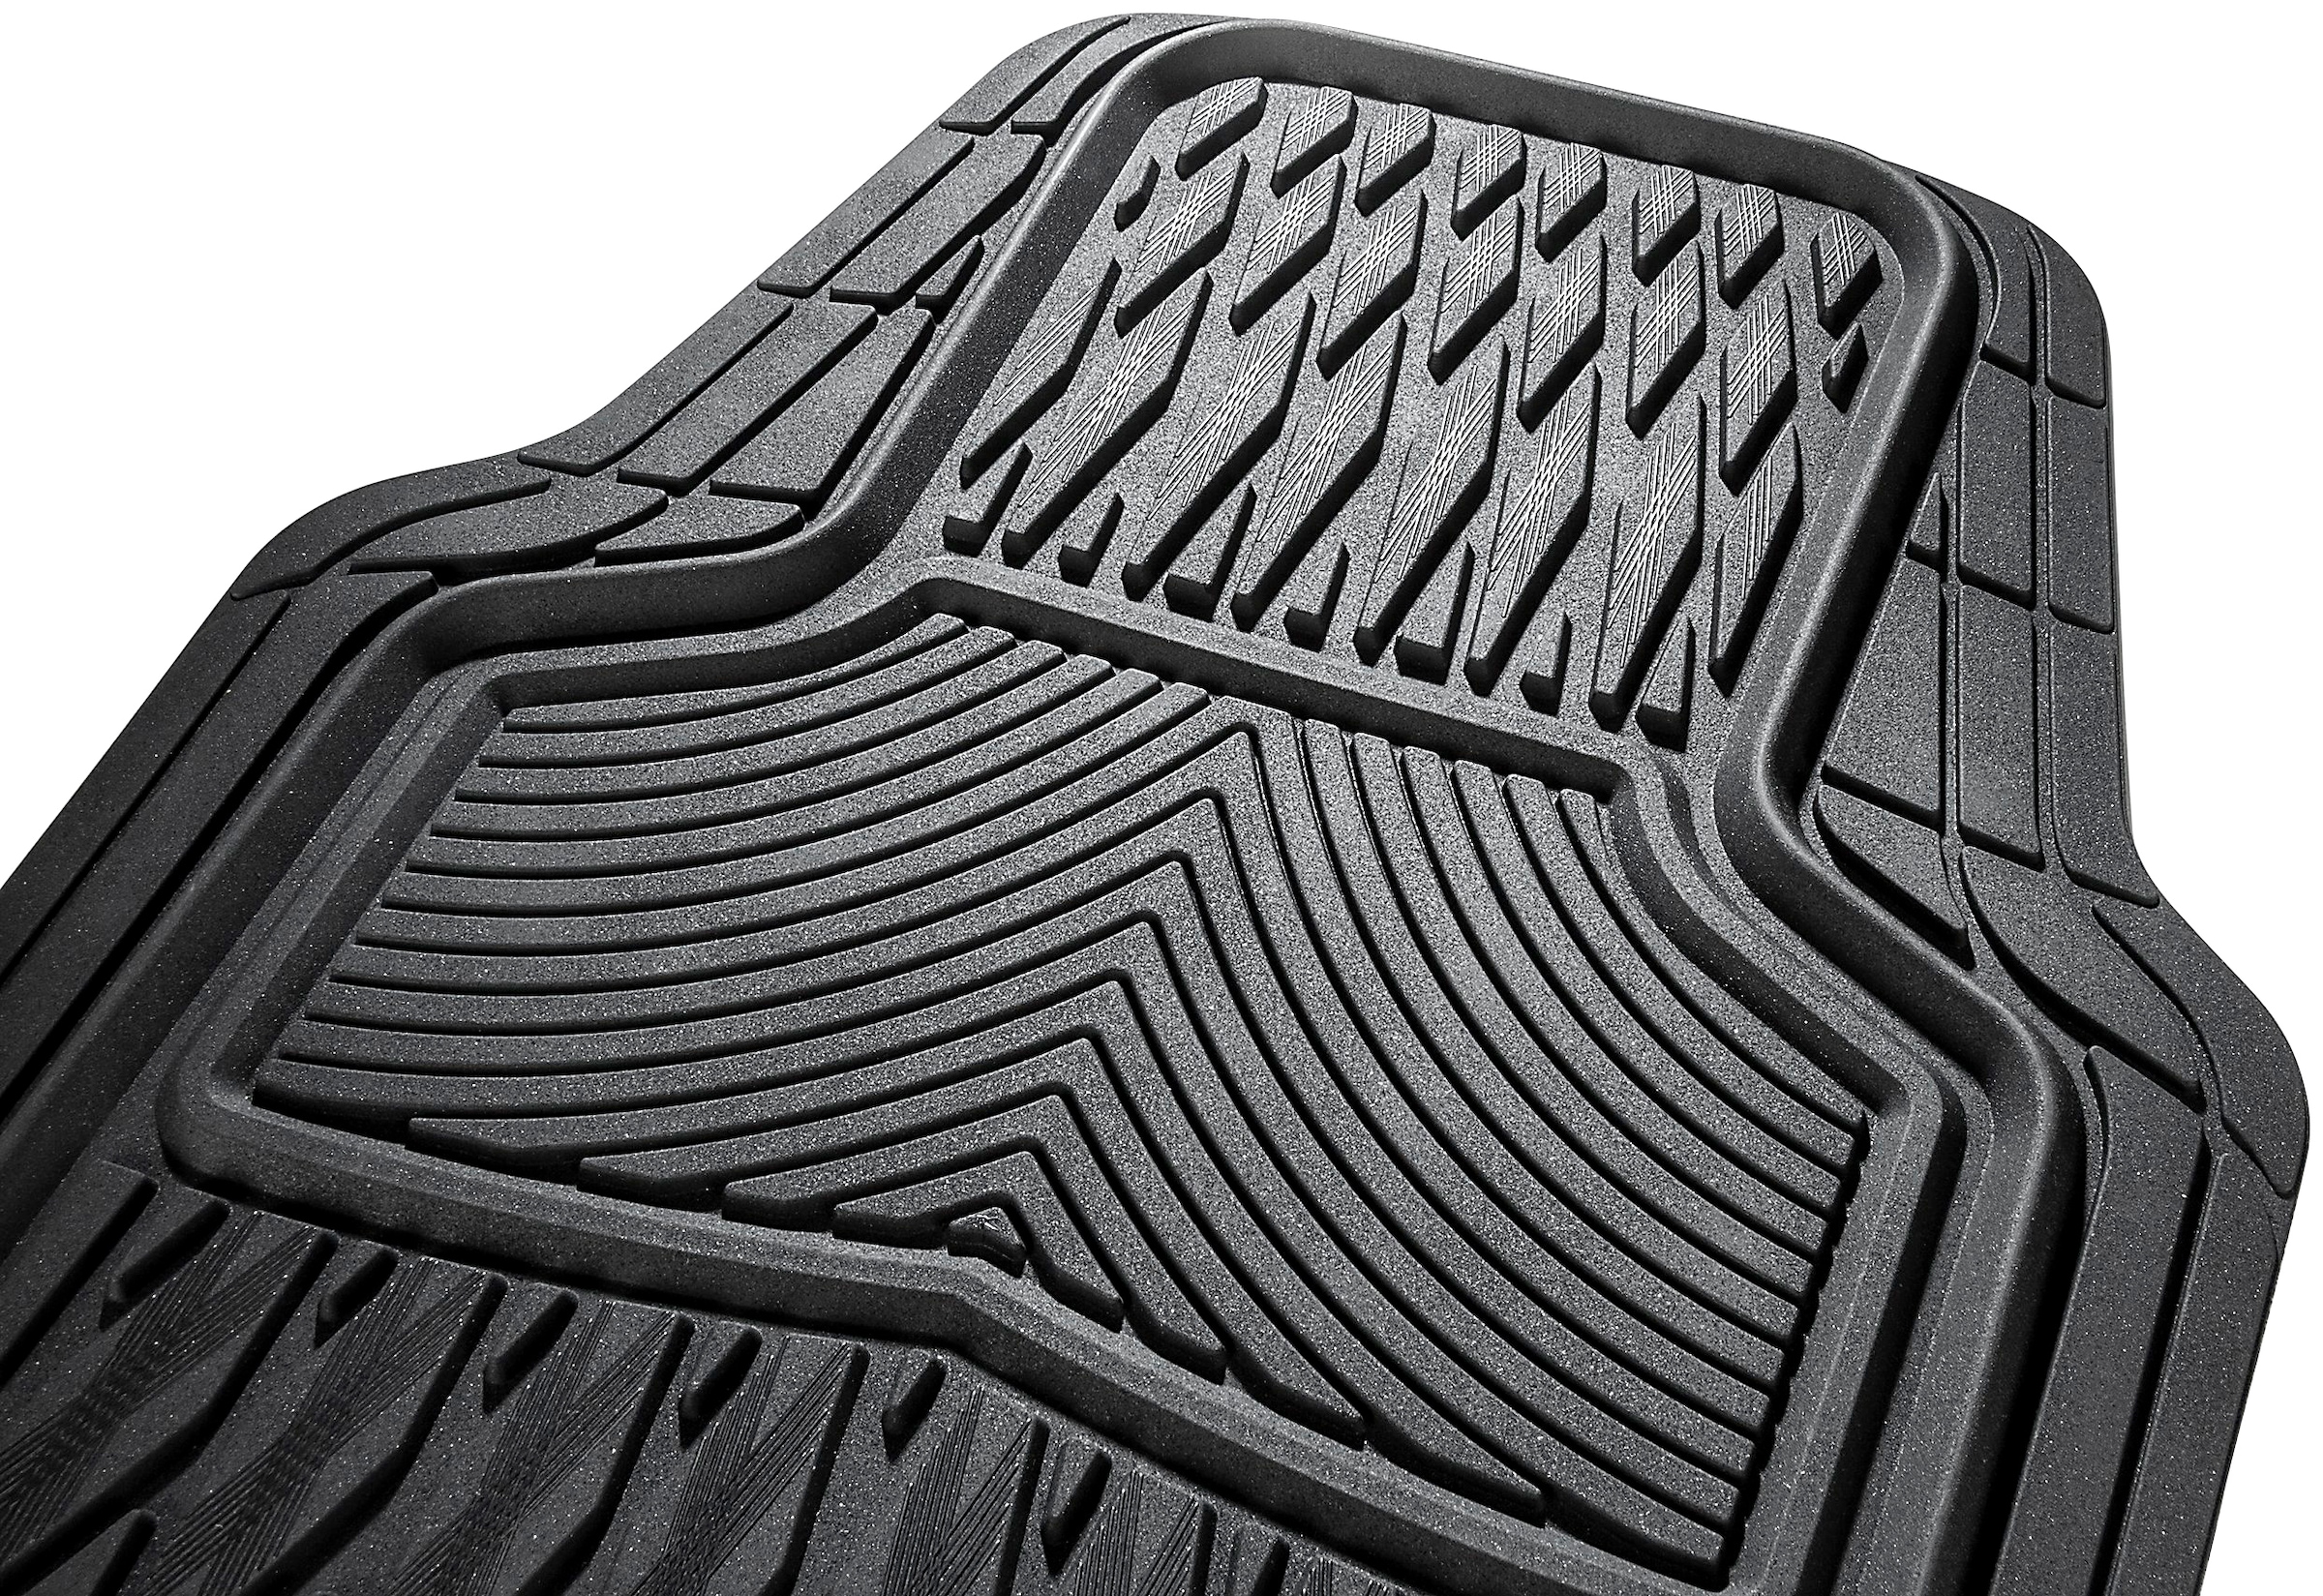 CarFashion Universal-Fußmatten »Allwetter Auto Fußmatten Set Macao«, Kombi/PKW, (Set, 4 St.), universal passend, zuschneidbar, wasserabweisend, rutschsicher, robust